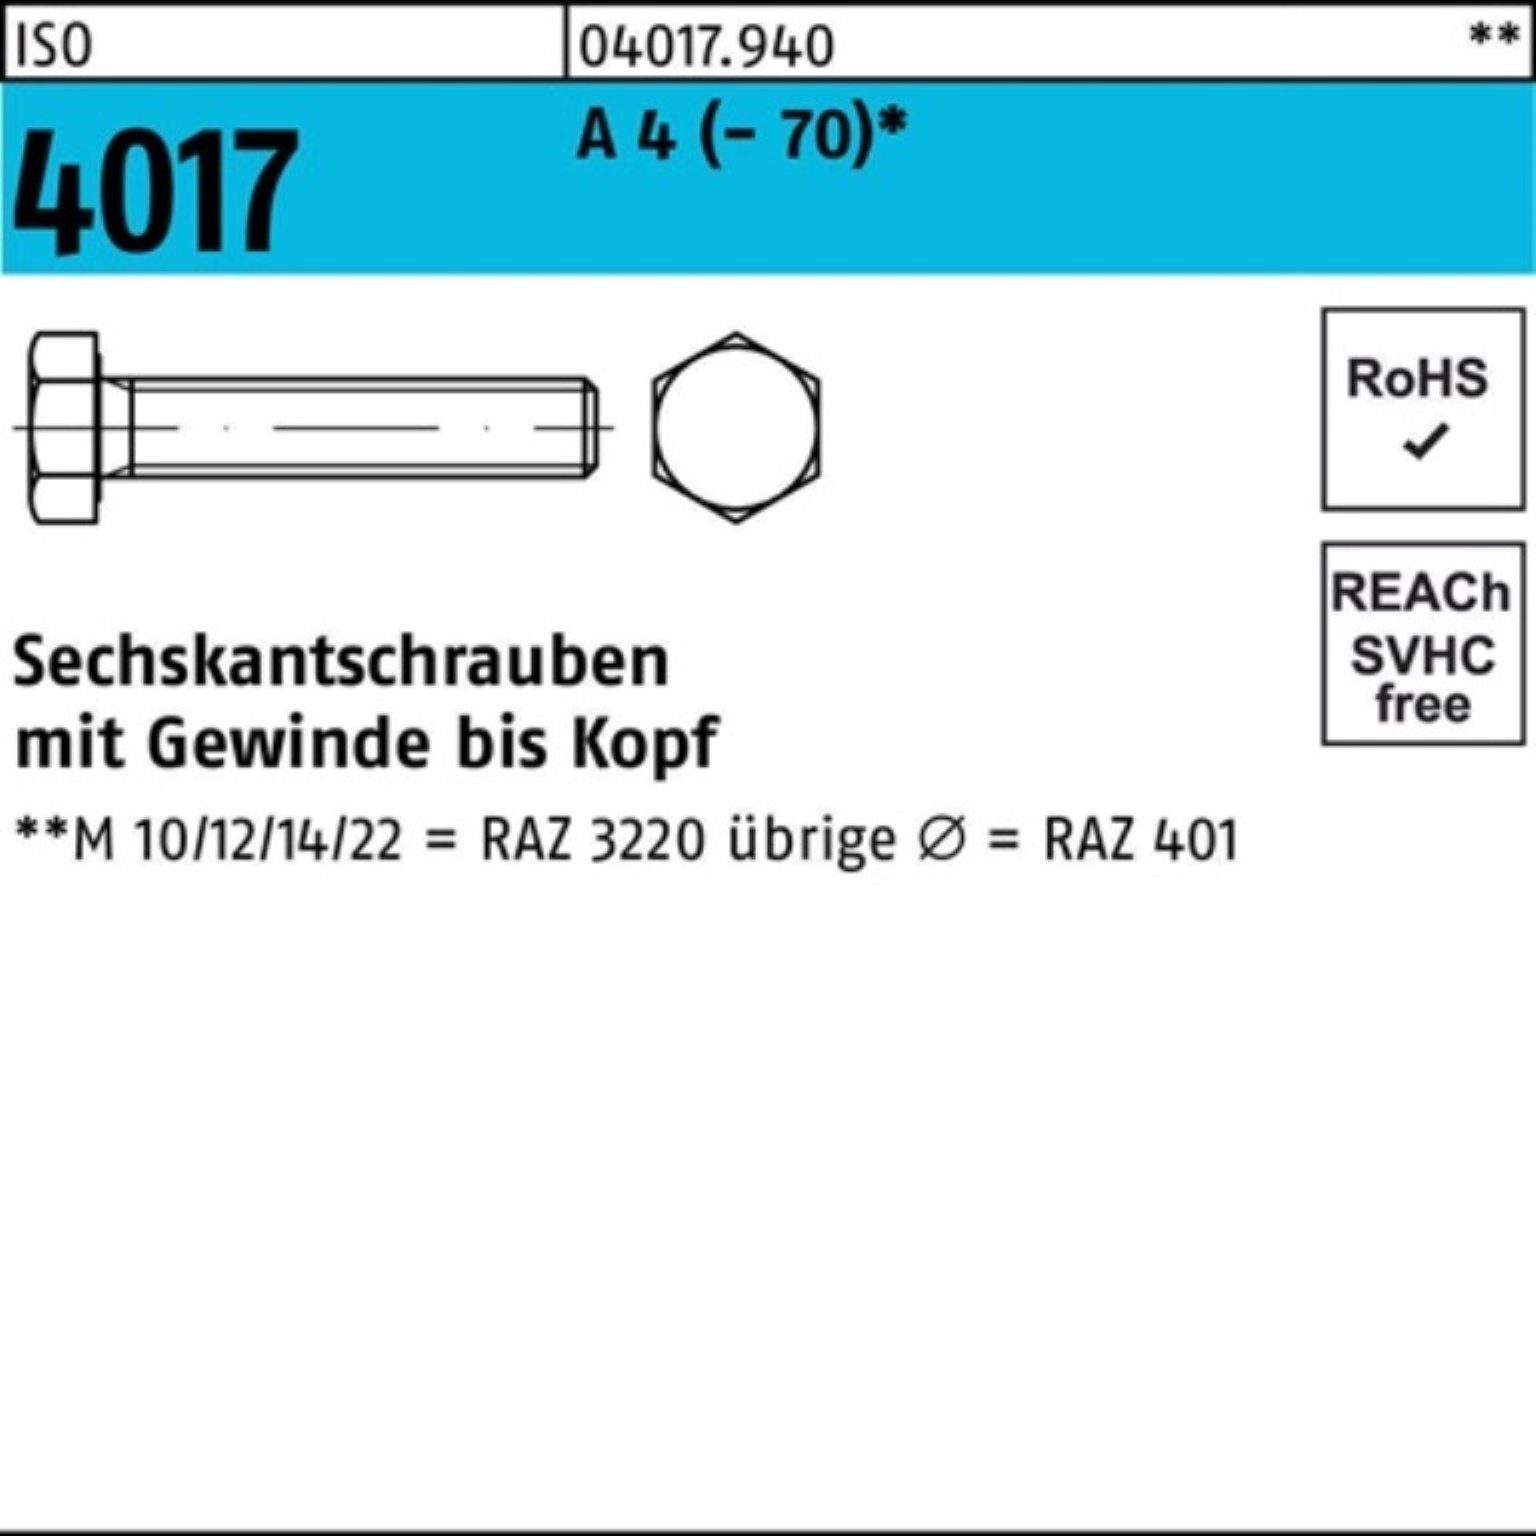 Bufab Sechskantschraube 100er Pack Sechskantschraube ISO 4017 VG M27x 90 A 4 (70) 1 Stück I